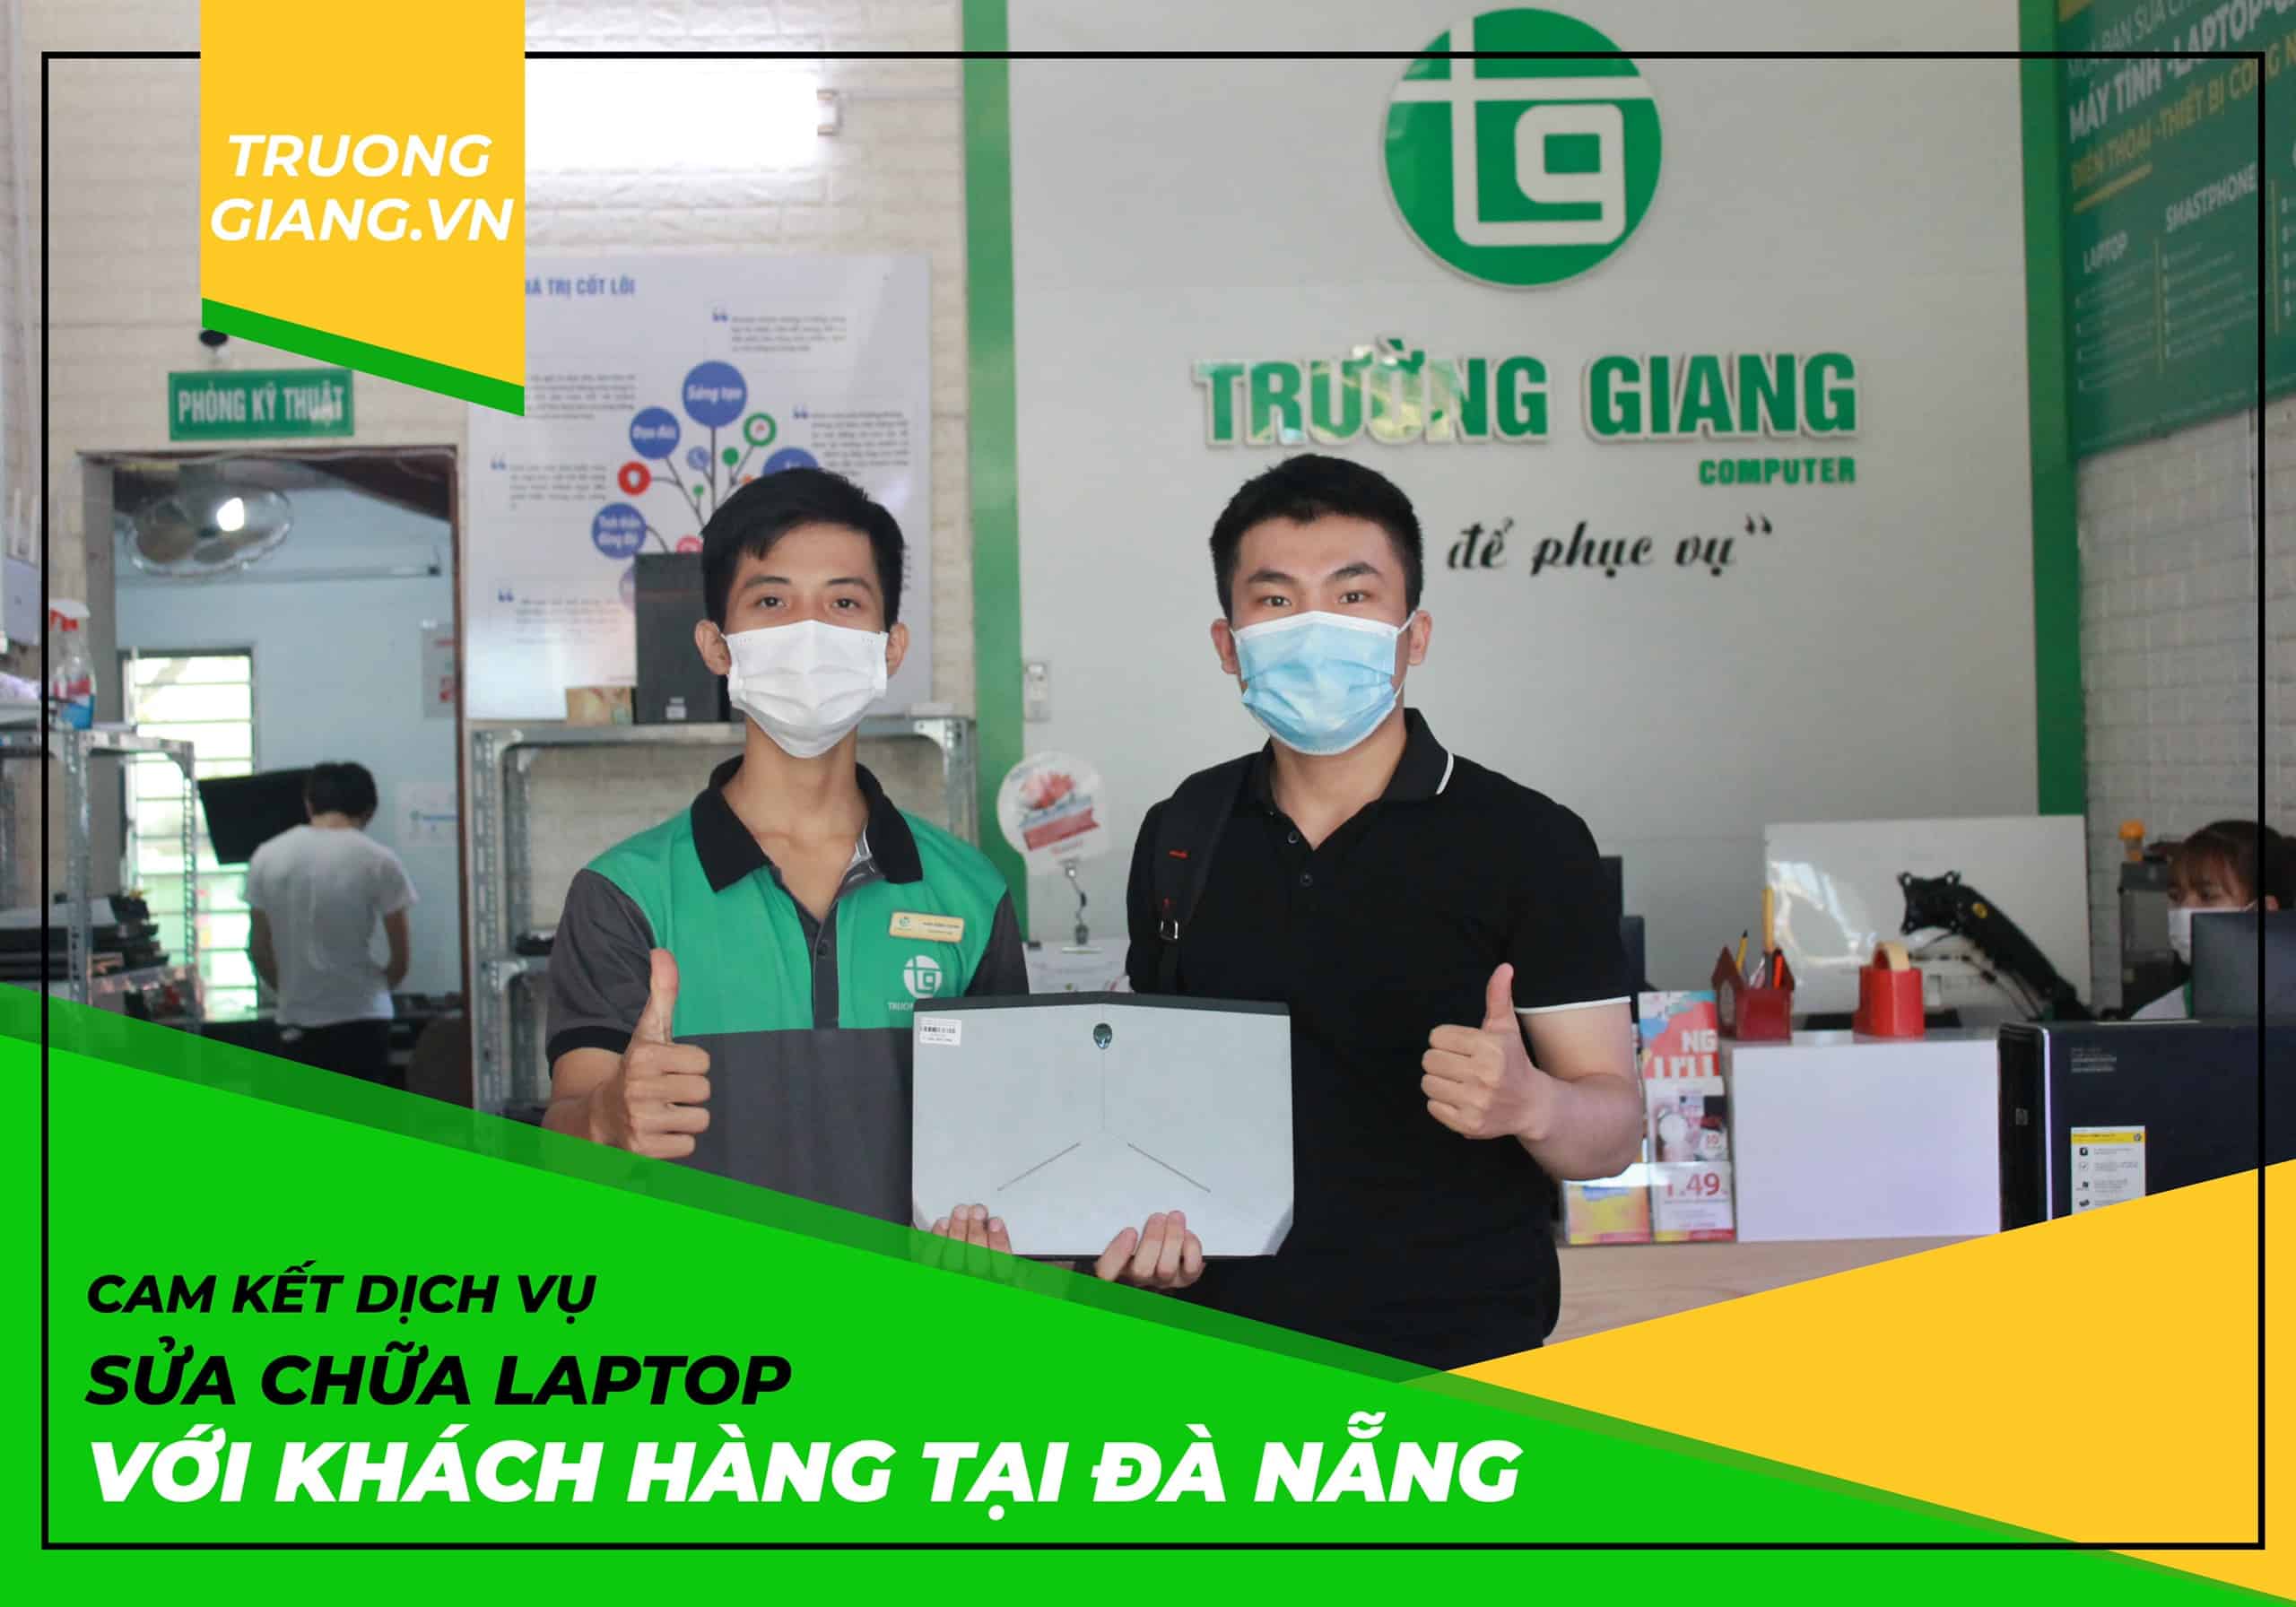 Sửa chữa laptop tại Đà Nẵng